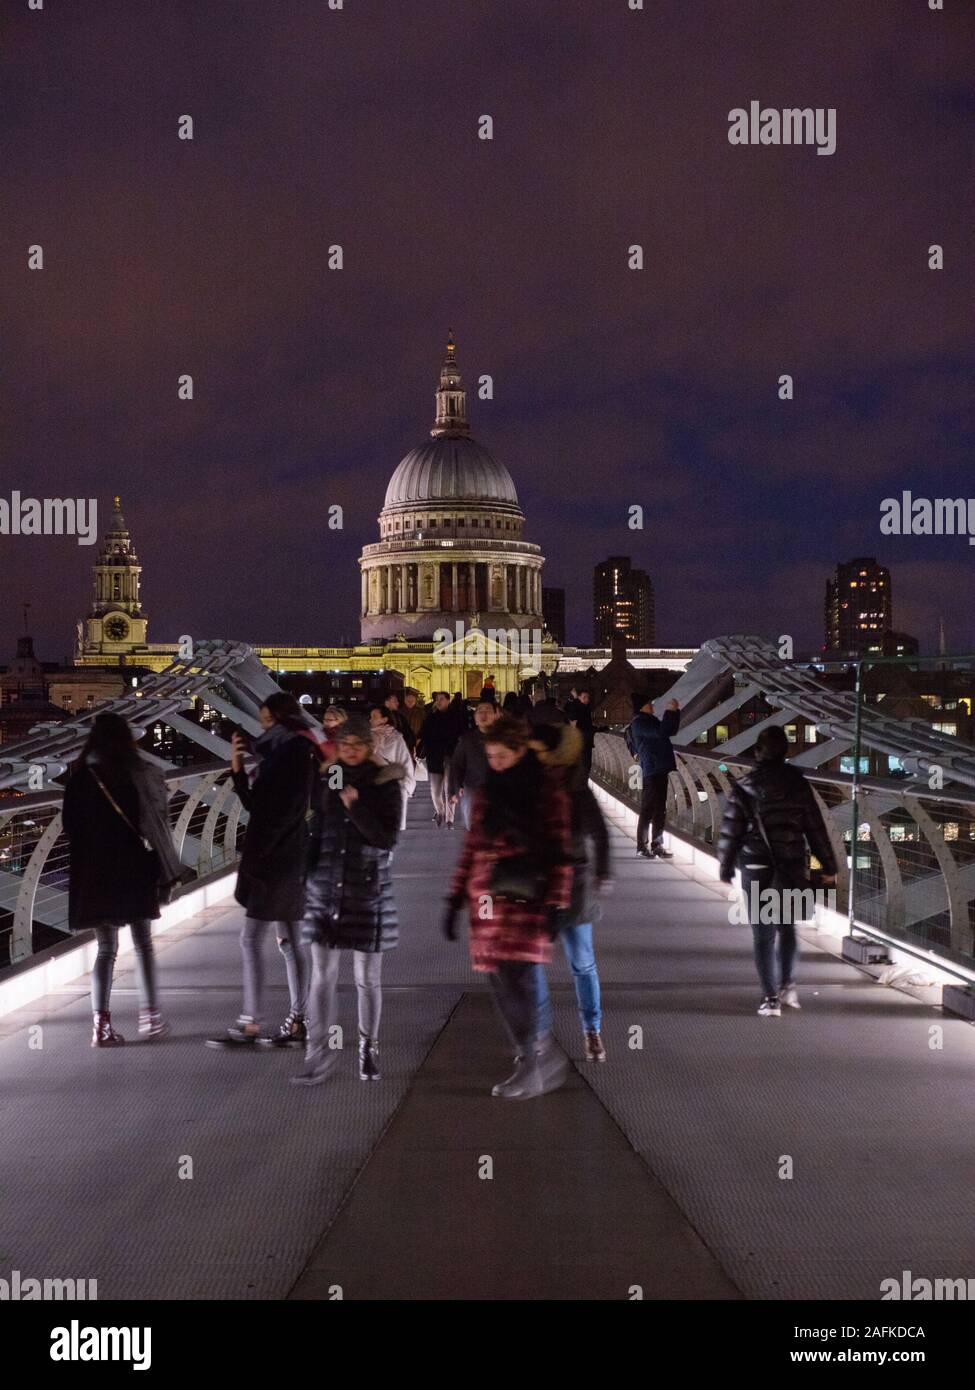 Touristes traversant le pont du Millénaire, Tamise, avec la Cathédrale St Paul, la nuit Paysage de Londres, Angleterre, RU, FR. Banque D'Images